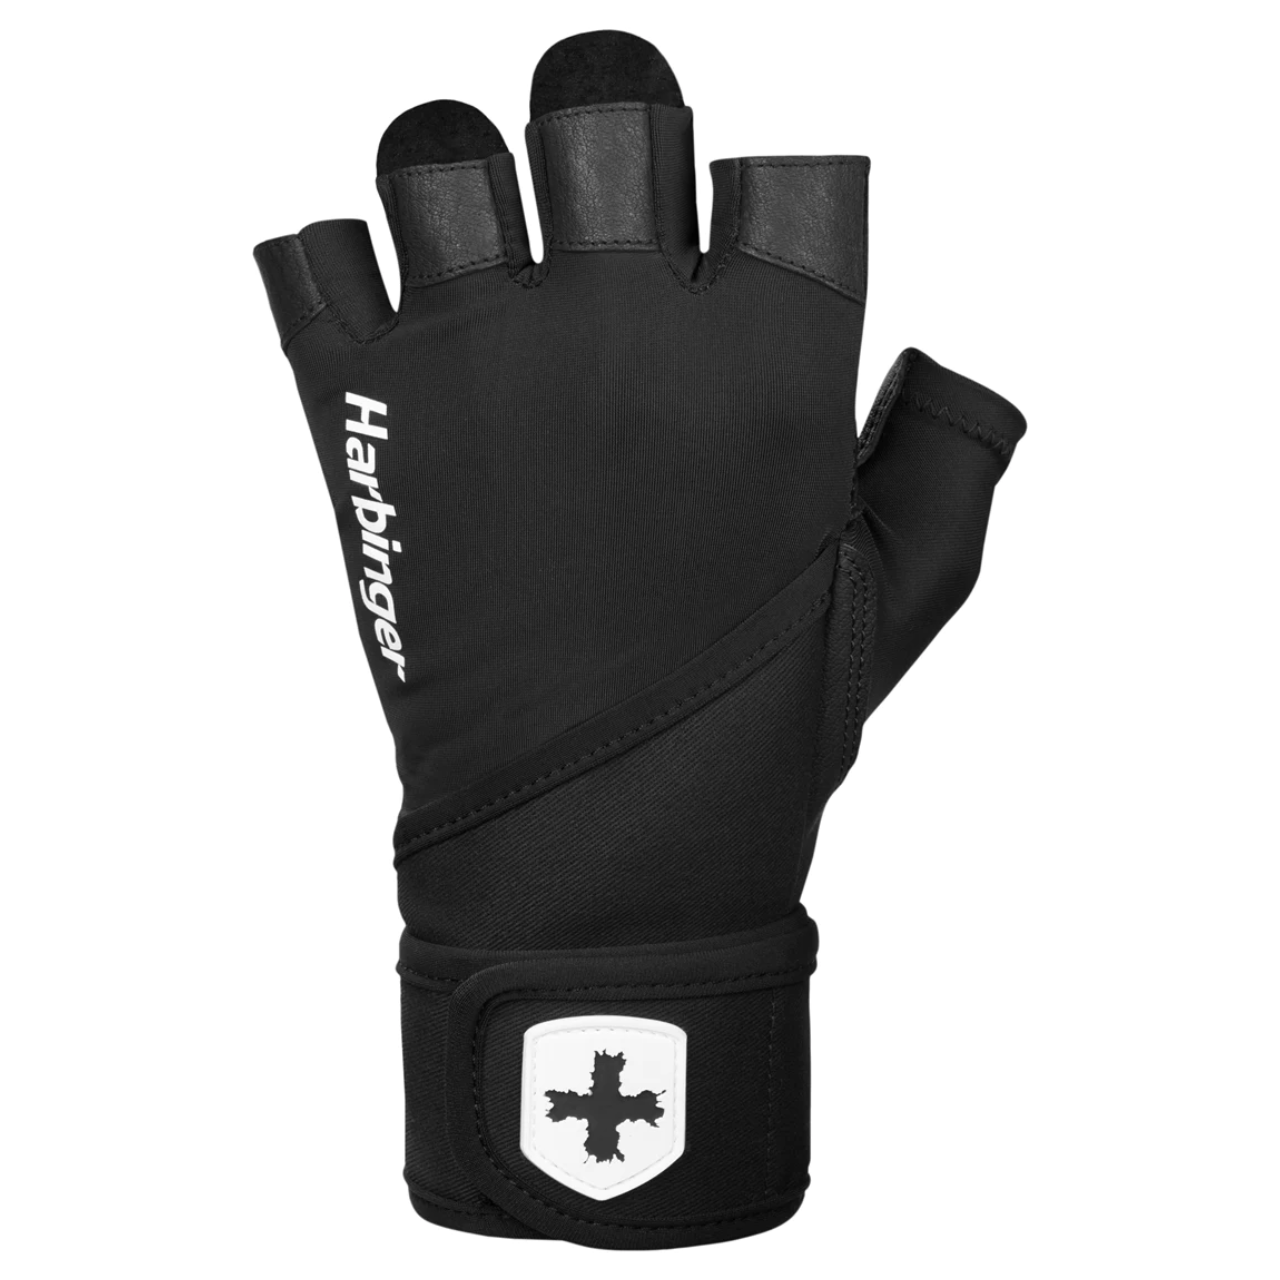 Harbinger Pro Wrist Wrap 2.0 Fitness Gloves